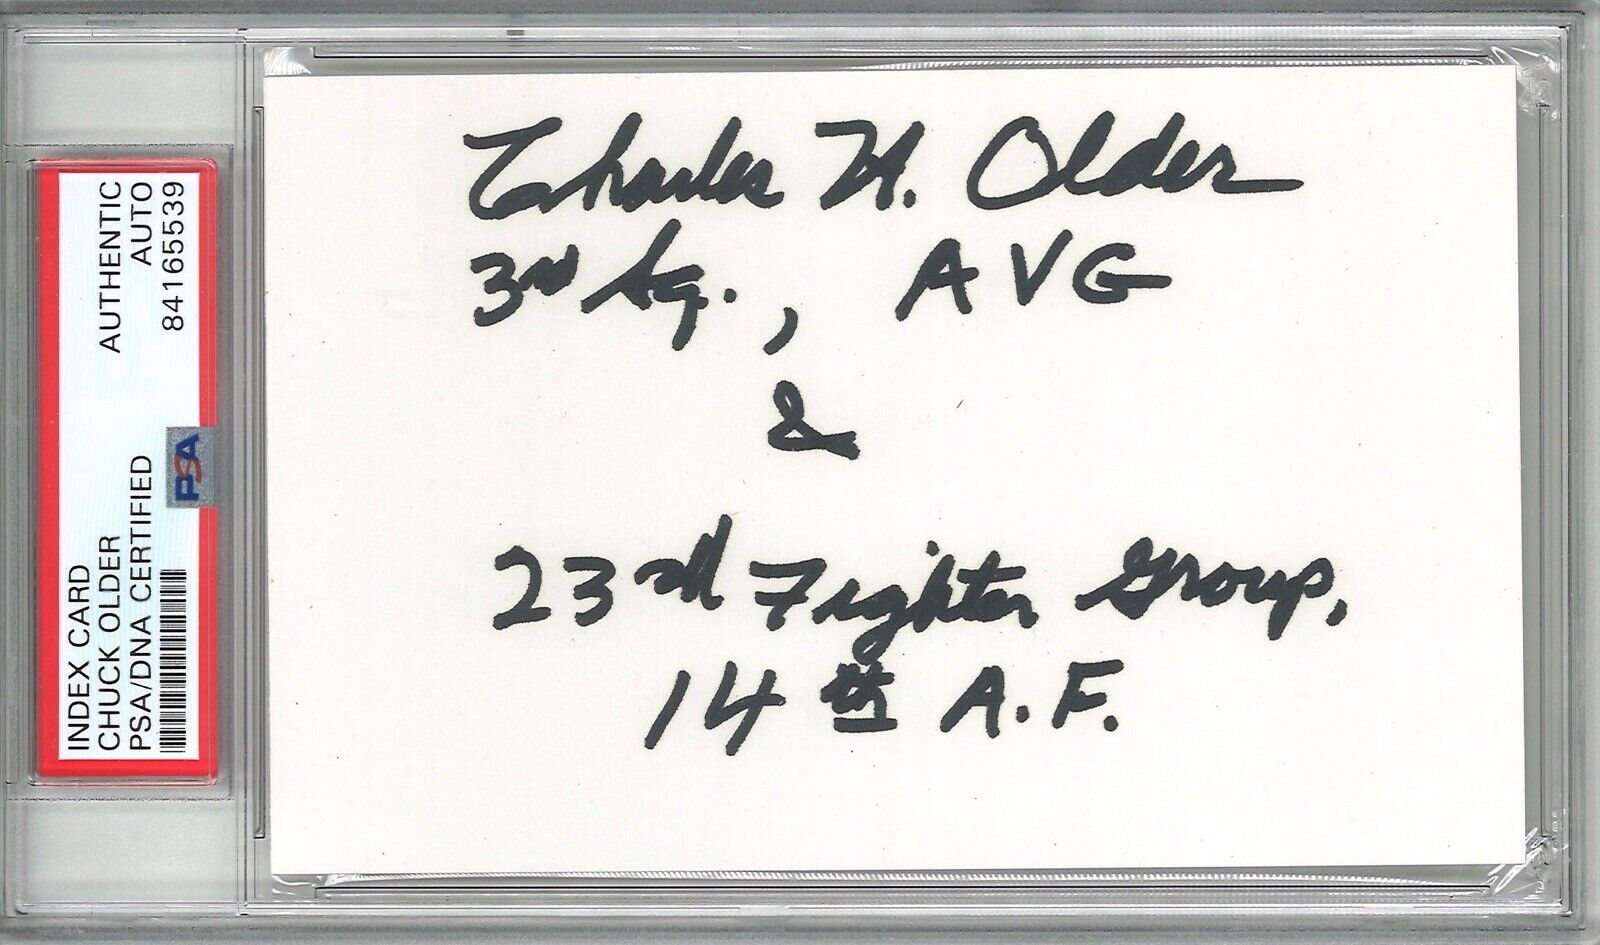 CHARLES OLDER SIGNED INDEX CARD PSA DNA 84165539 WWII ACE 18.25V AVG TIGER